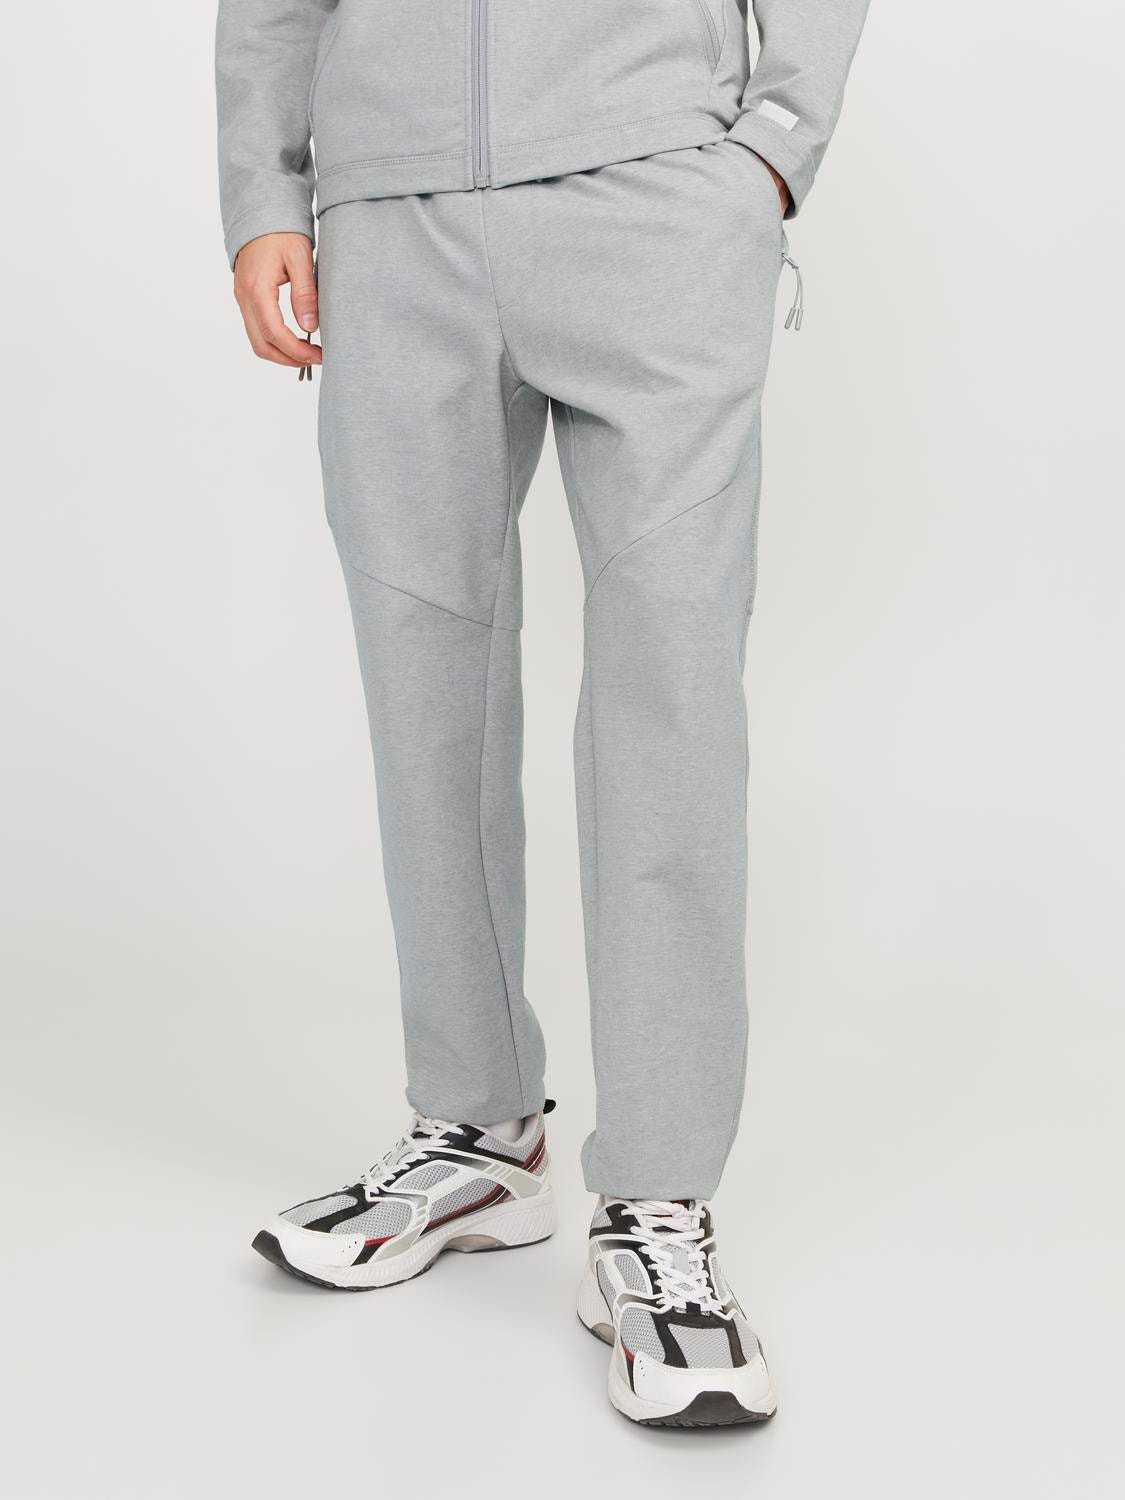 Calças de jogging Nike Tech Fleece Slim Fit para homem em cinzento